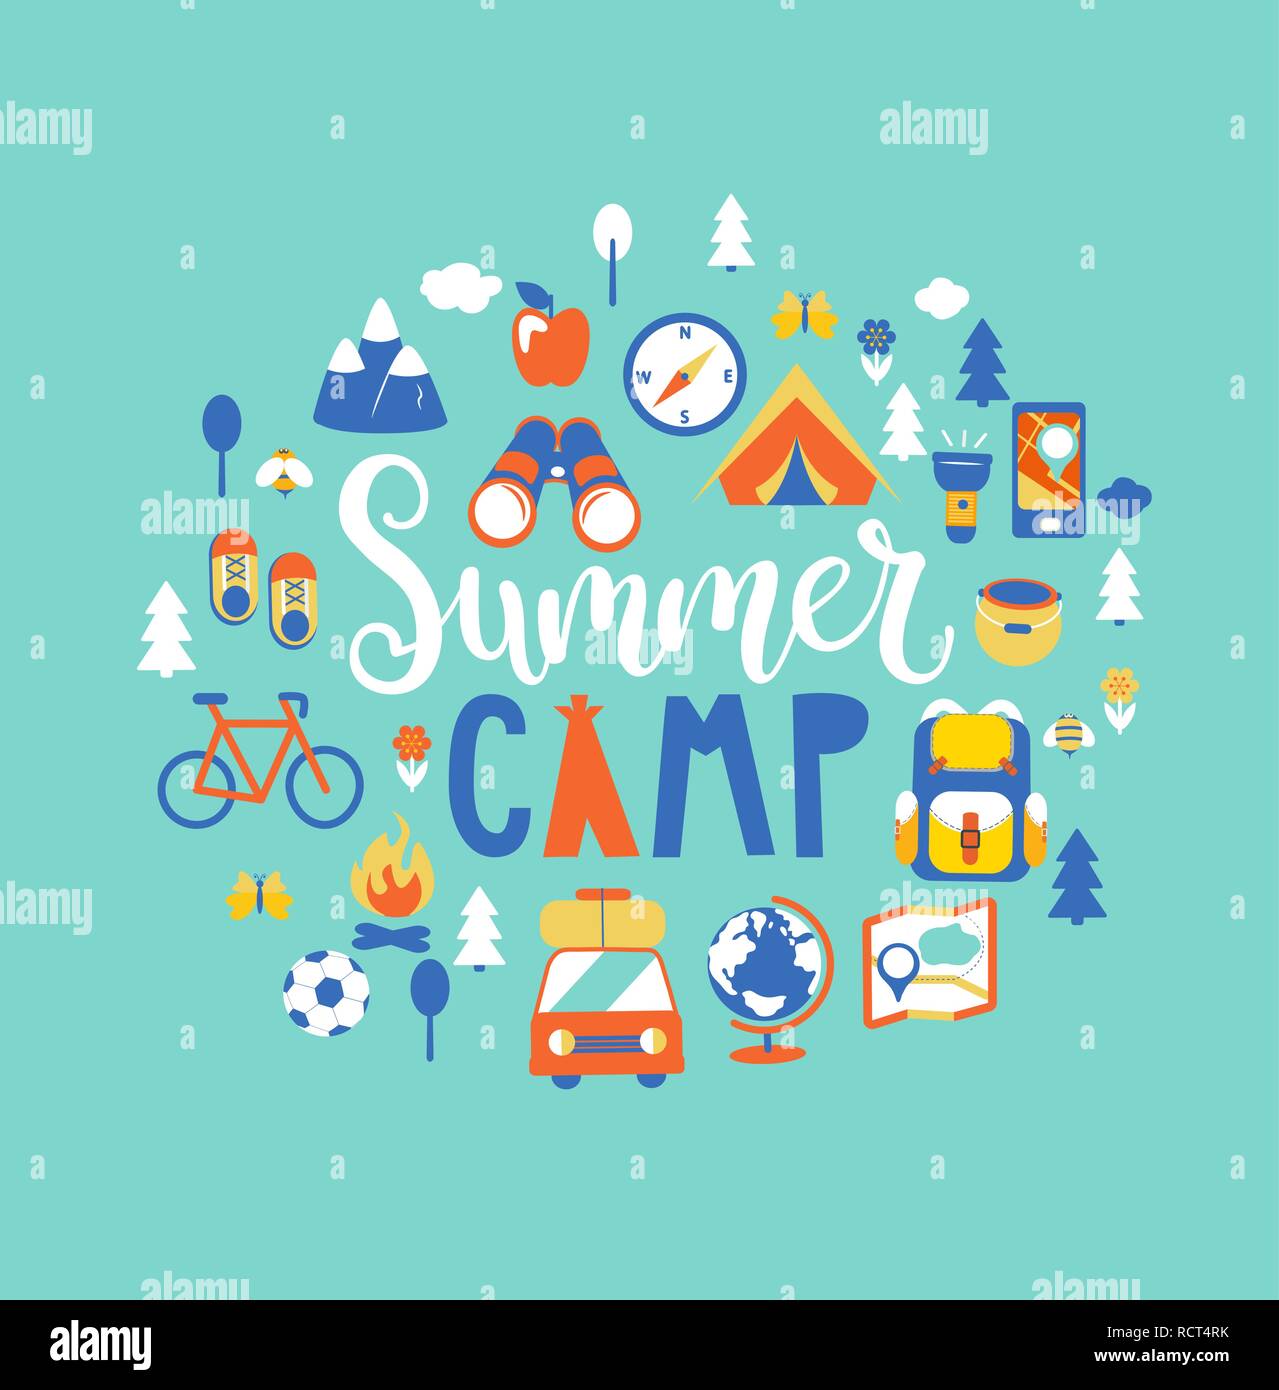 Sommer Camp Konzept mit handdrawn Schriftzug, Camping und Reisen Urlaub mit einer Menge Camping Ausrüstung wie Zelt, Rucksack und andere. Plakat im flachen Stil, Vector Illustration. Stock Vektor